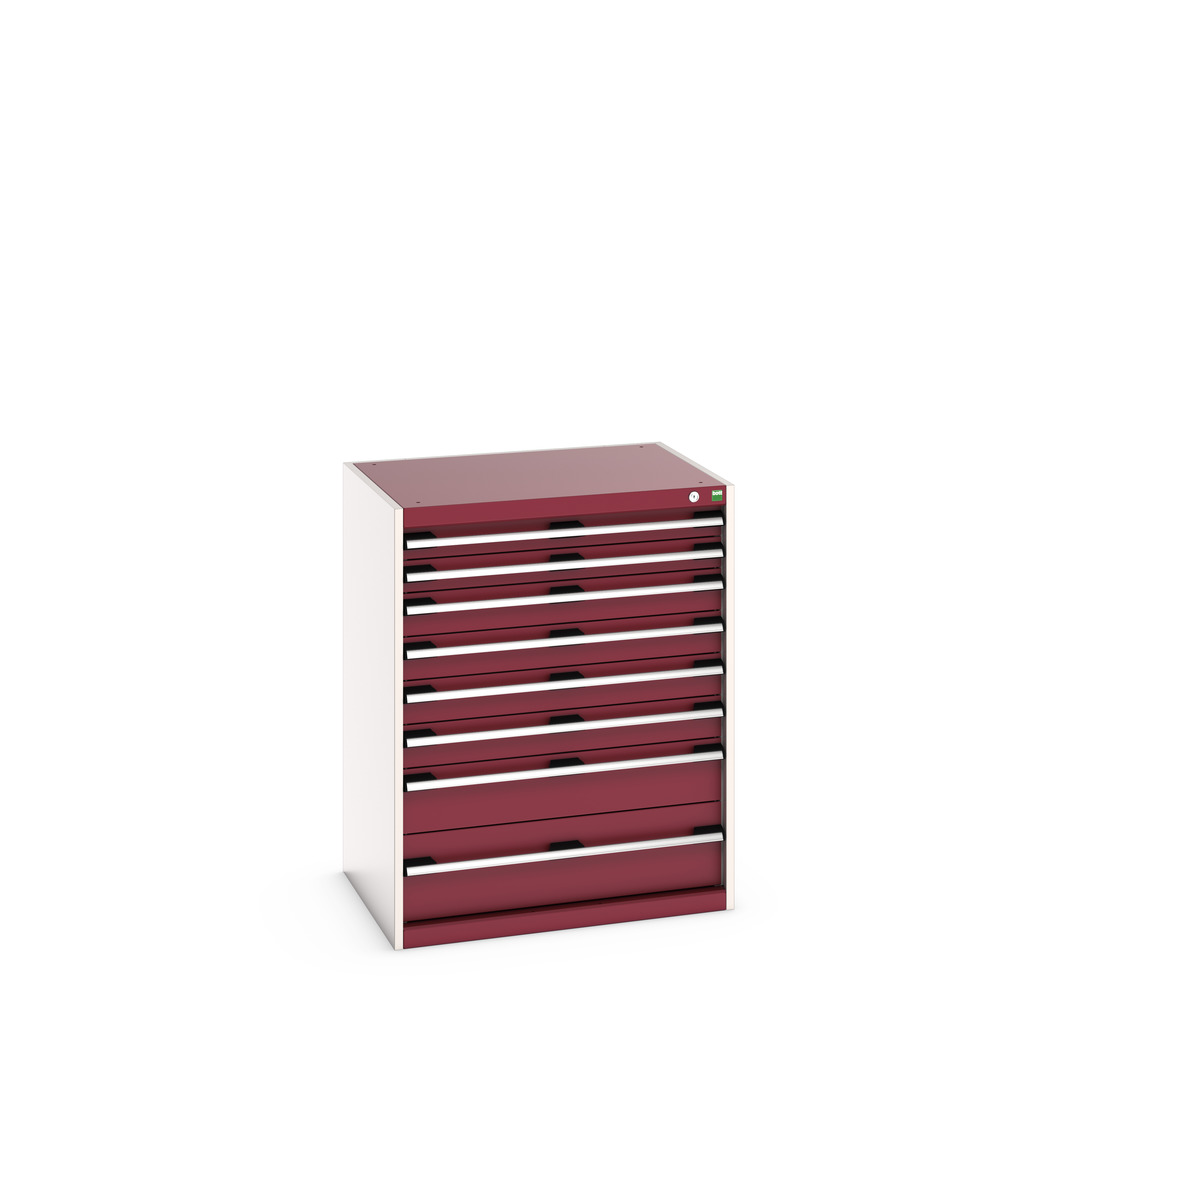 40020143.24V - cubio drawer cabinet